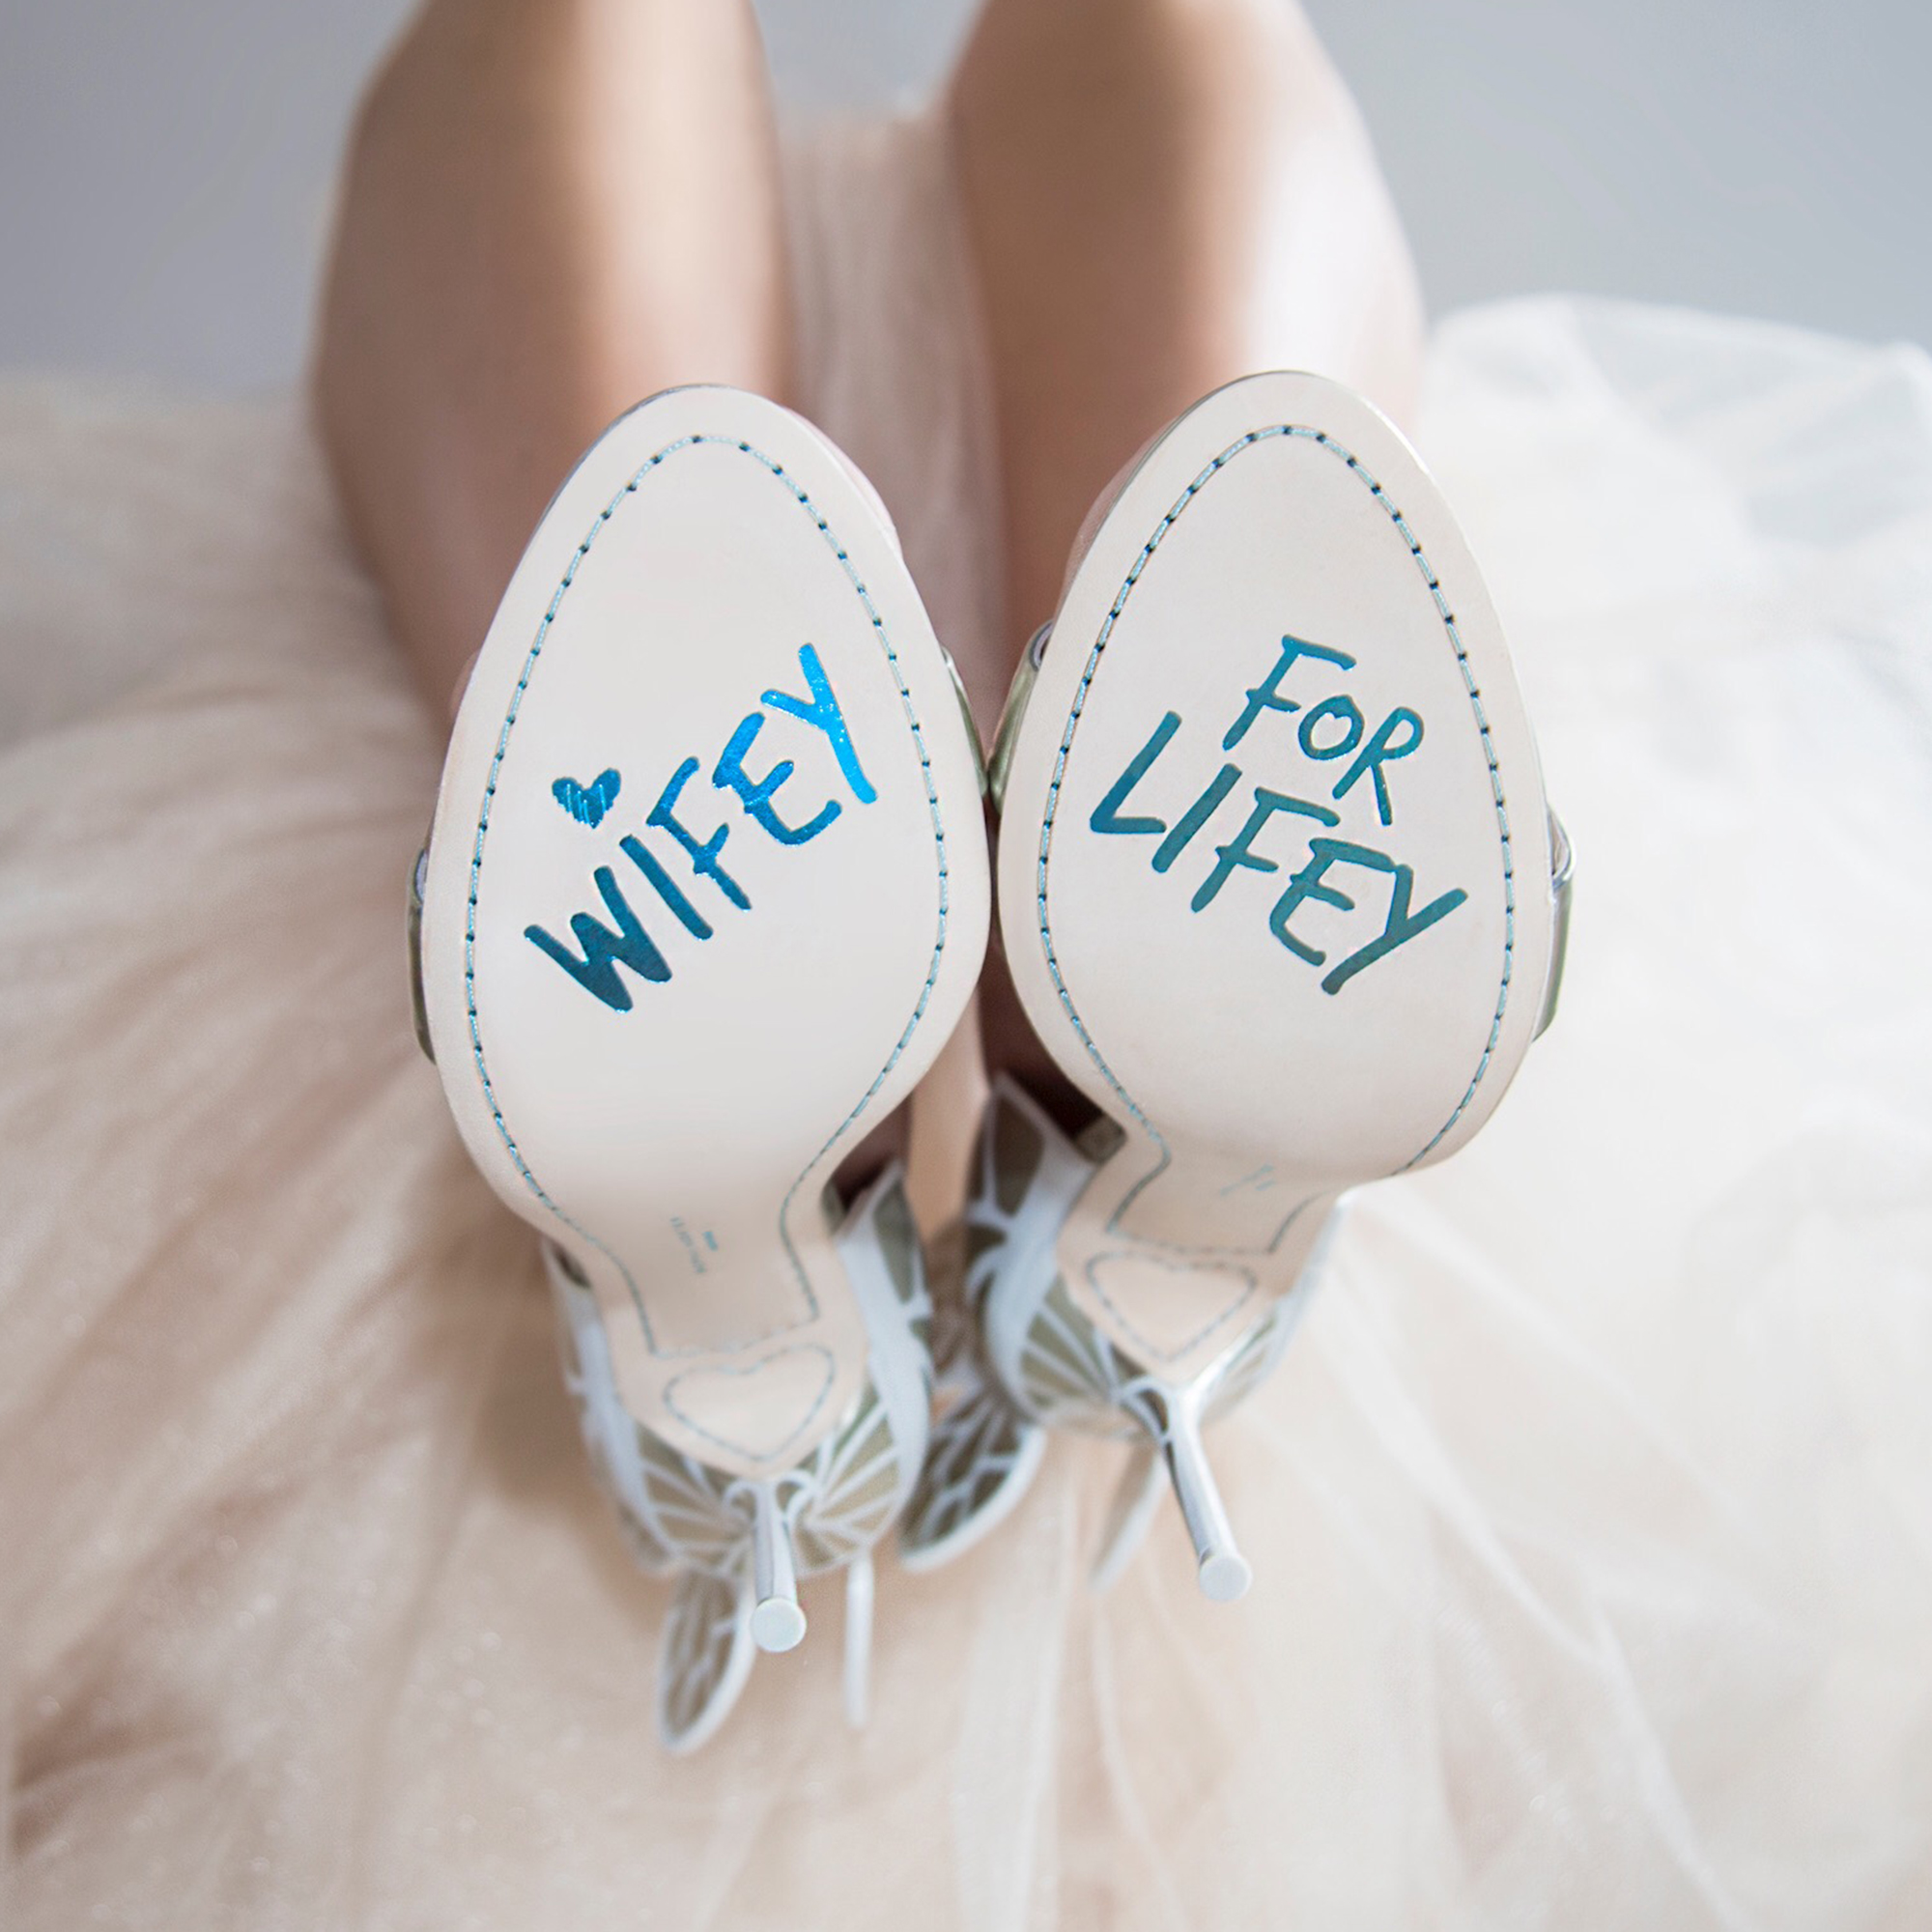 sophia webster bridal heels